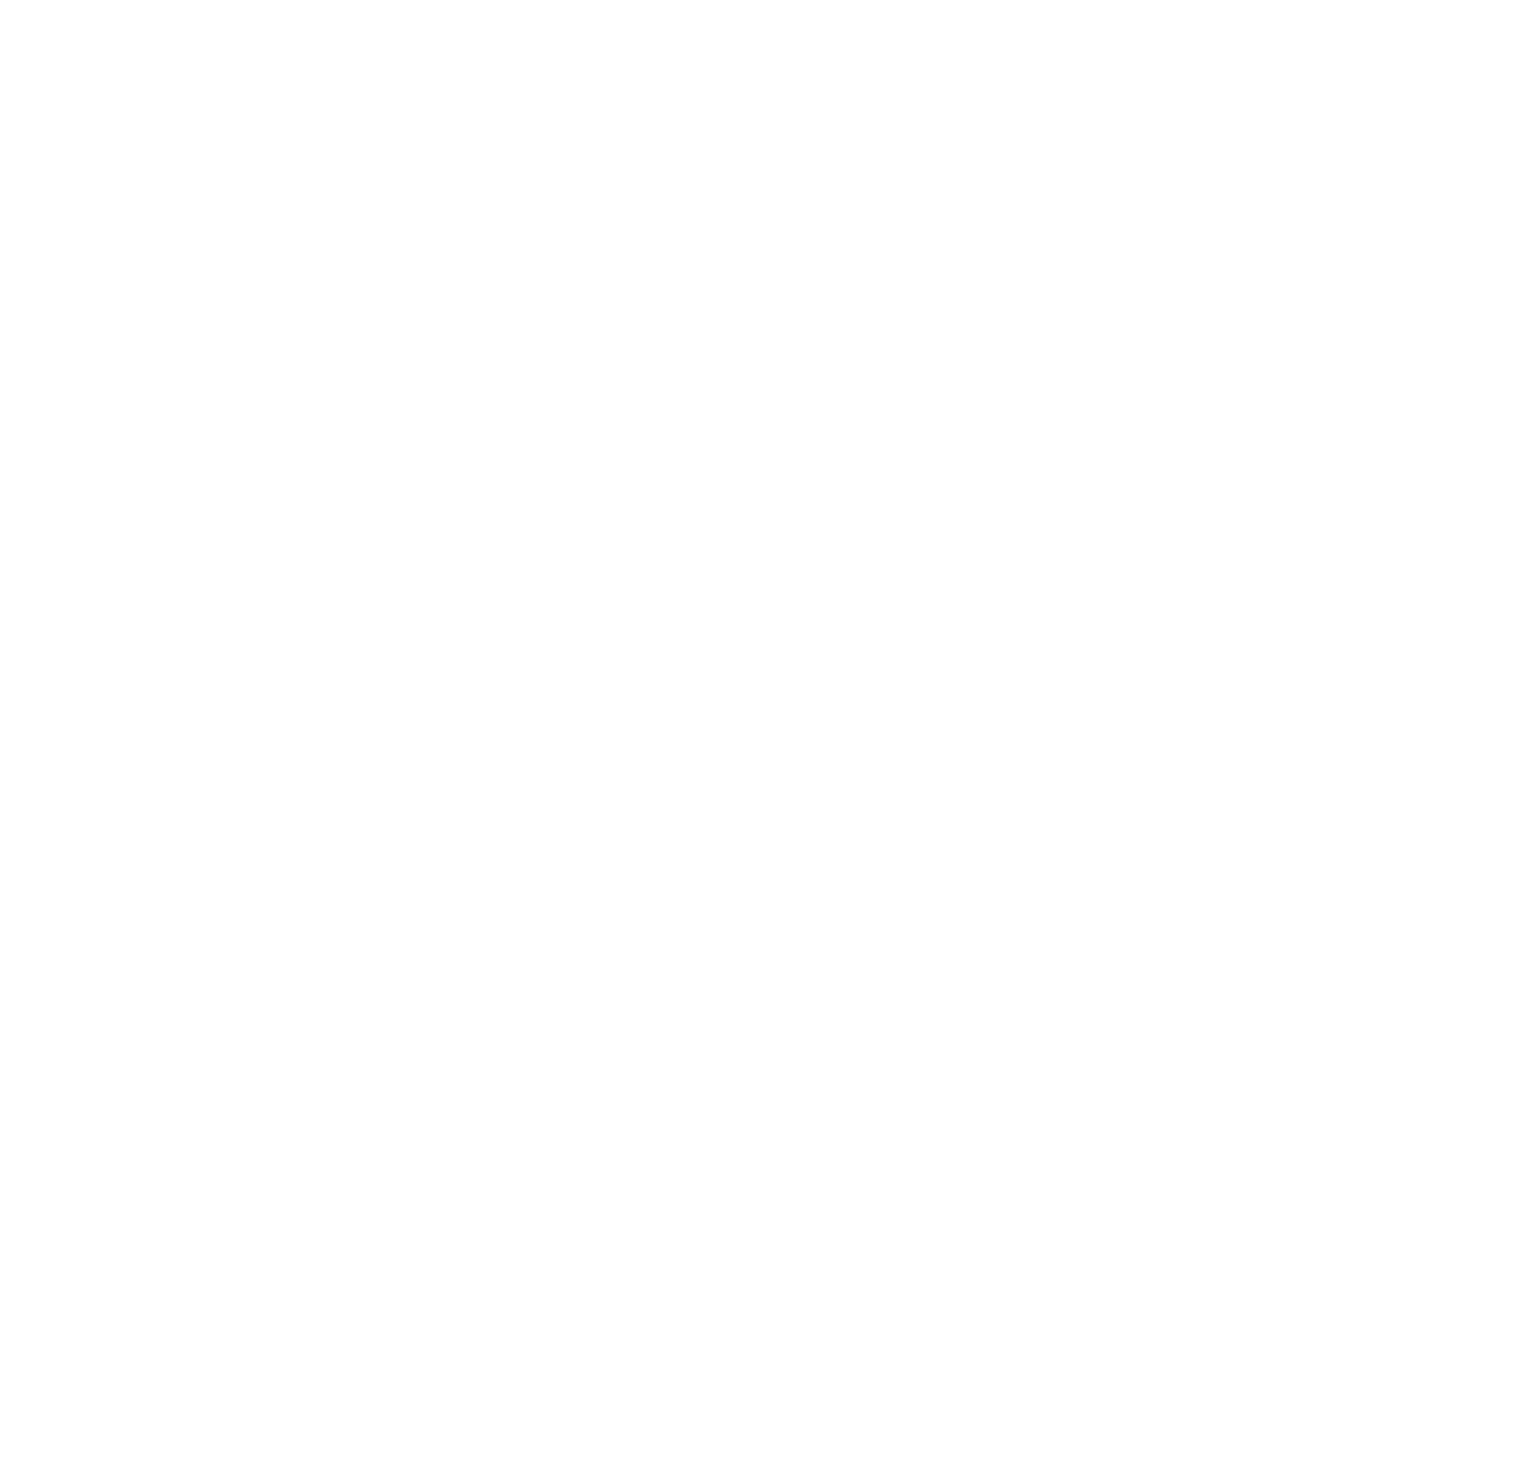 Endeavour Silver logo pour fonds sombres (PNG transparent)